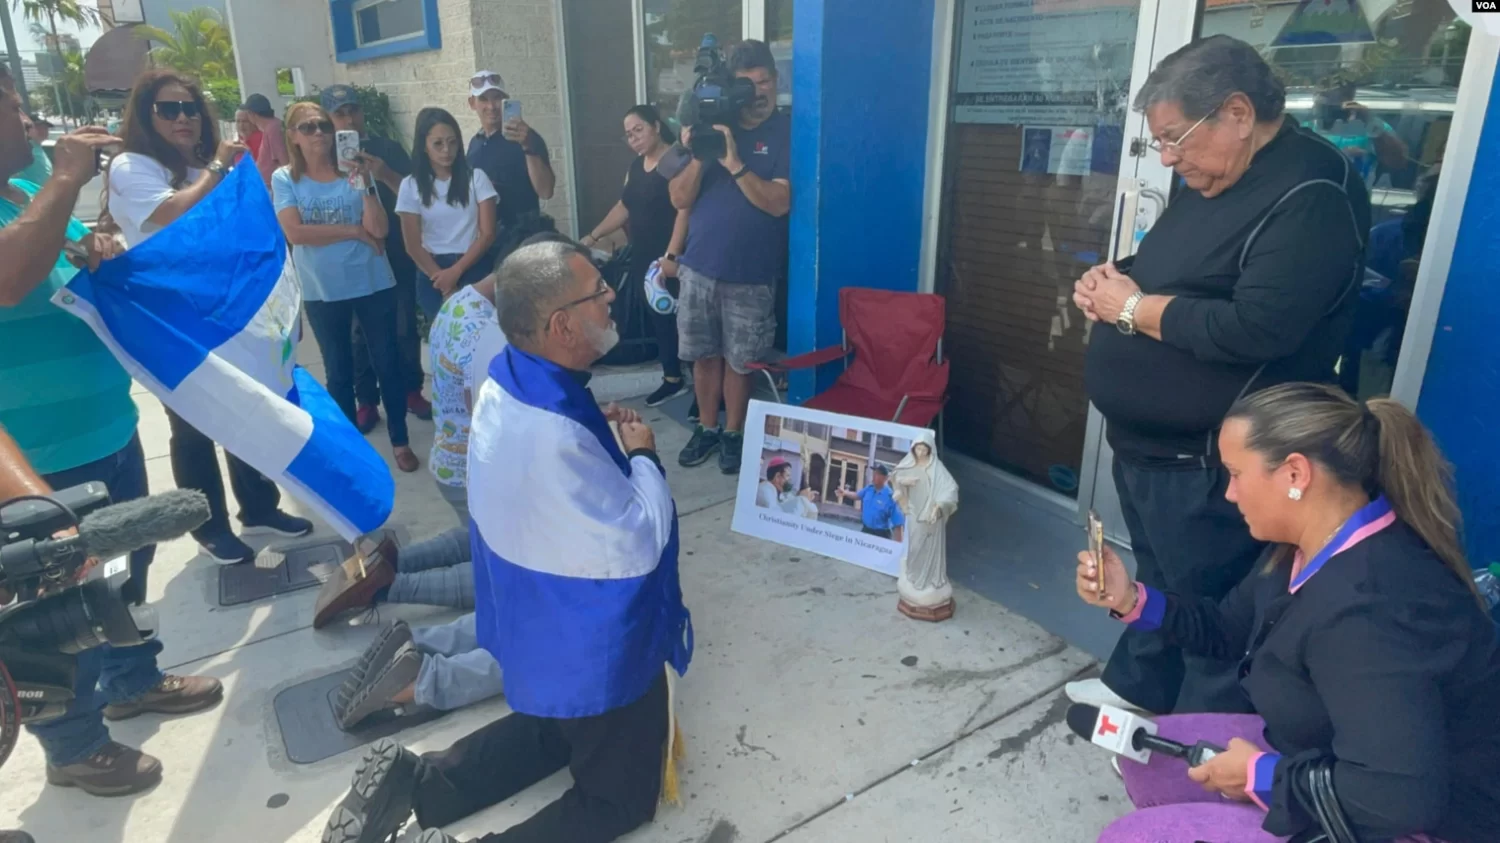 Organizaciones internacionales y de derechos humanos han alertado sobre la ola represiva en Nicaragua que este ano llego hasta miembros de la Iglesia catolica y otros cultos religiosos opuestos a Daniel Ortega